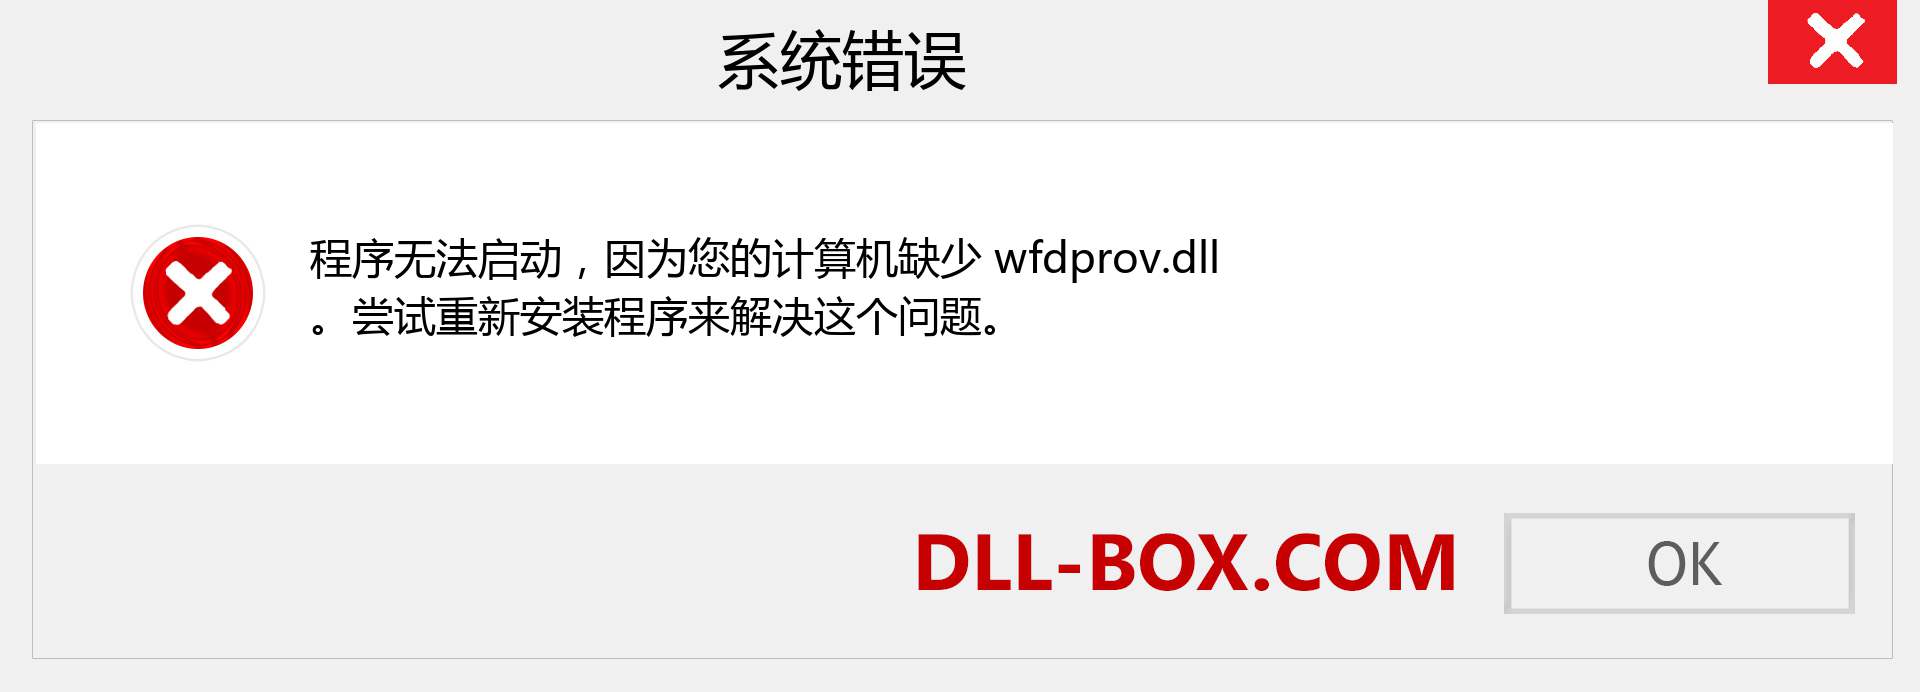 wfdprov.dll 文件丢失？。 适用于 Windows 7、8、10 的下载 - 修复 Windows、照片、图像上的 wfdprov dll 丢失错误